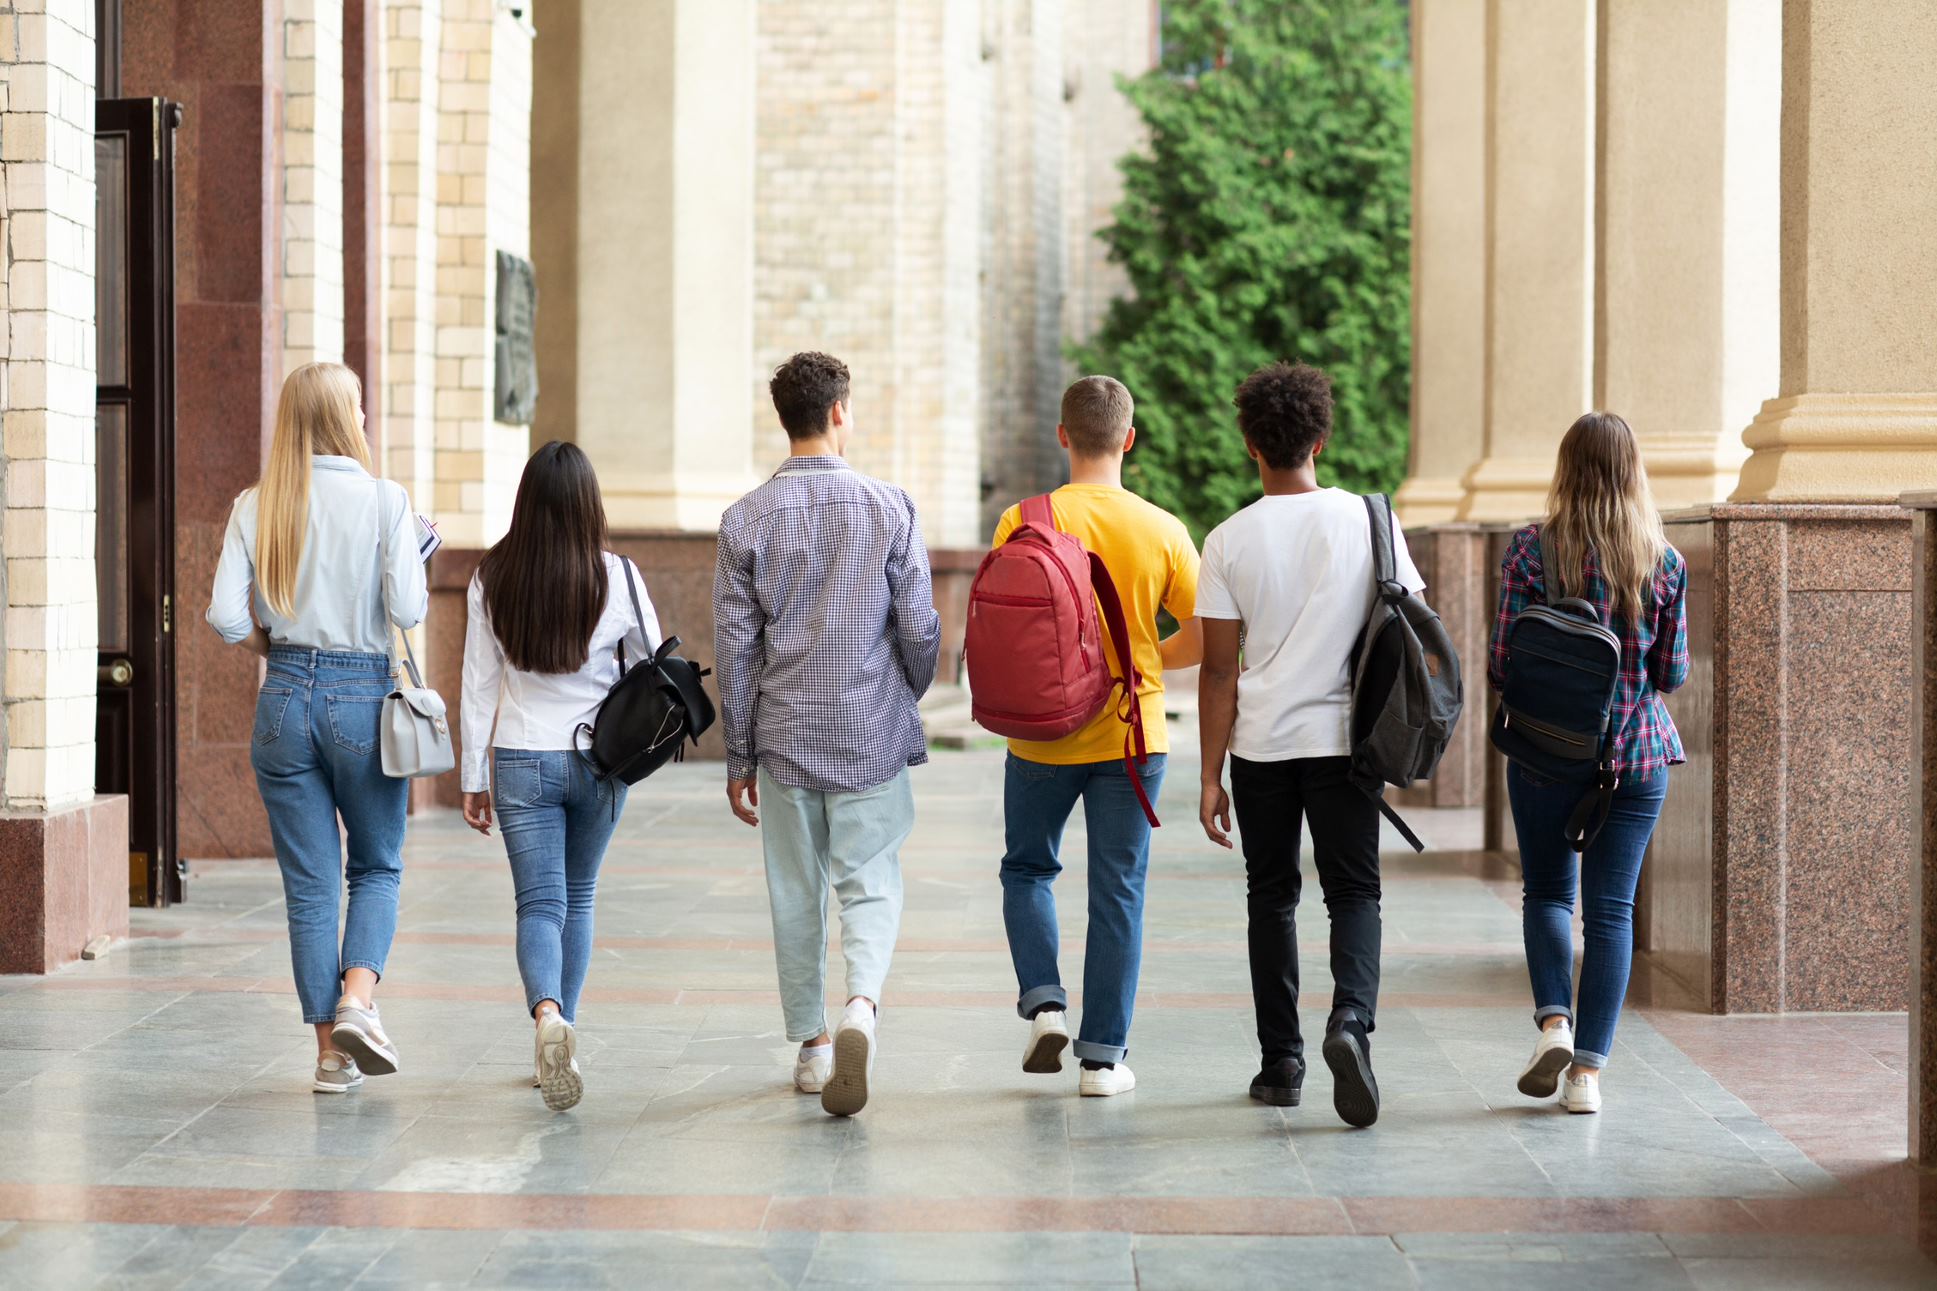 Groupe d'étudiants marchant dans un campus universitaire